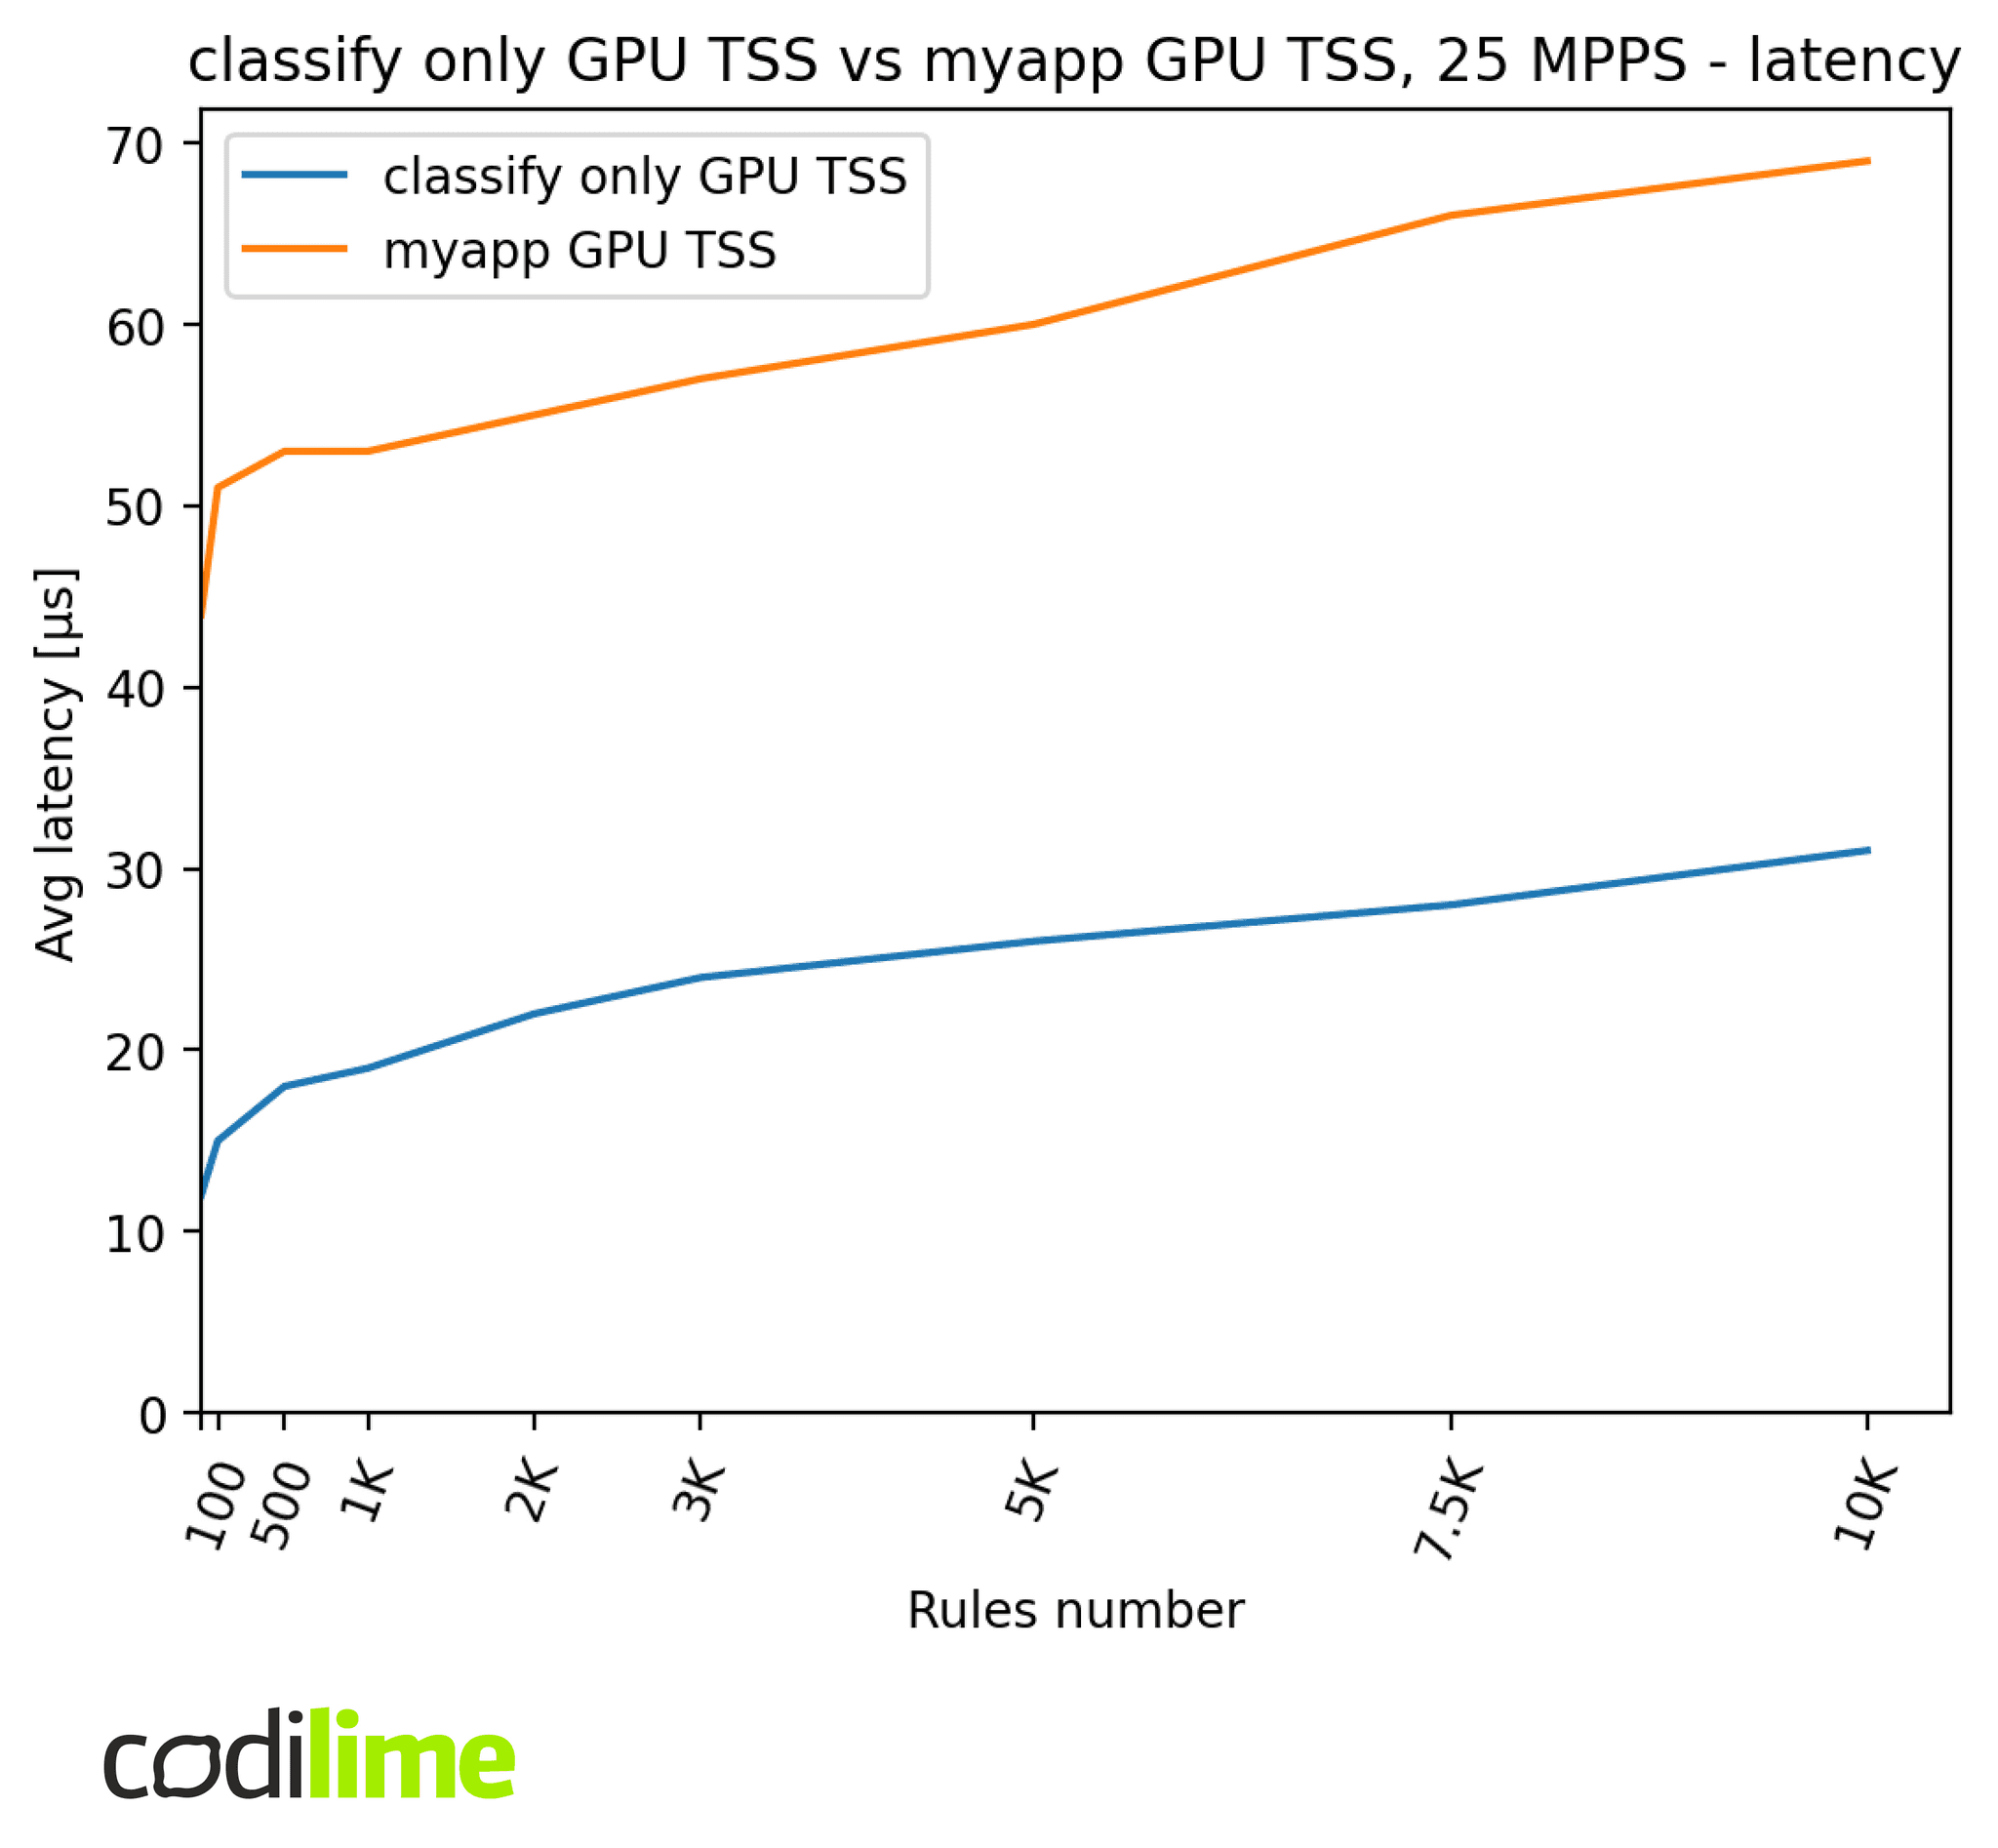 GPU TSS vs myapp GPU TSS 25 MMPS latency